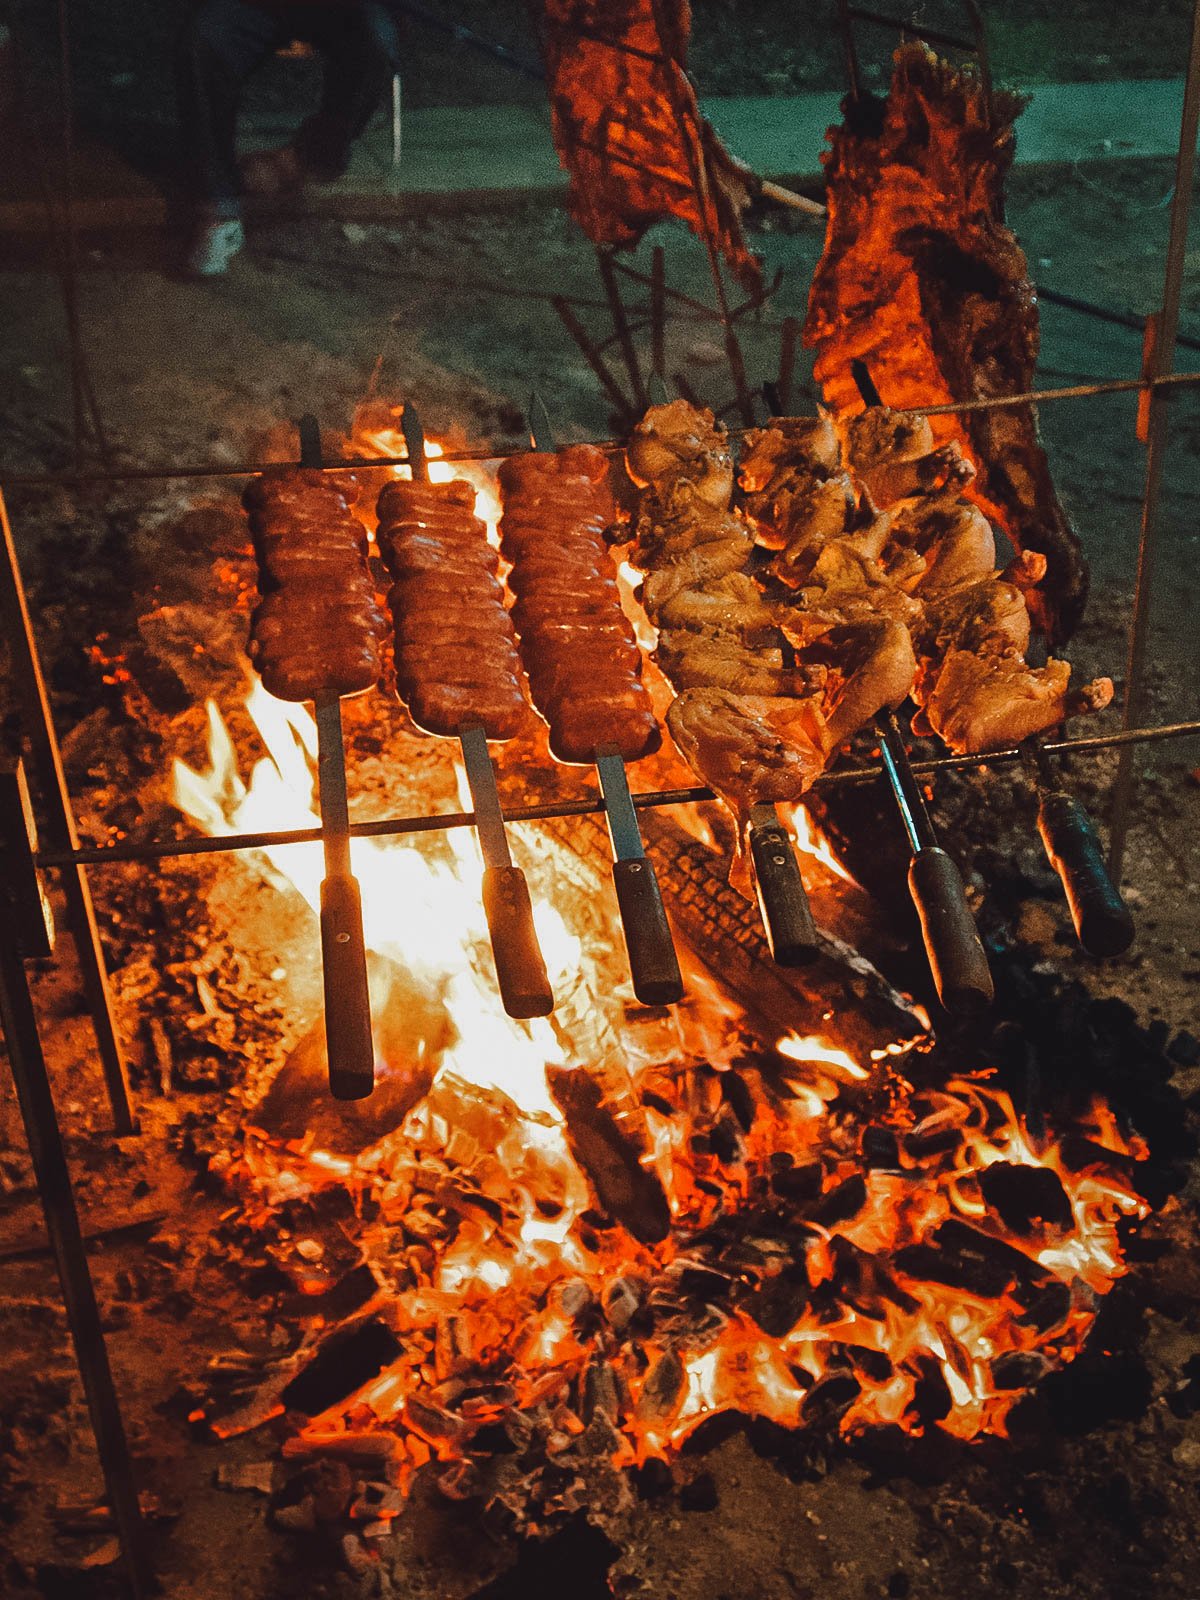 Carnes churrasco a la parrilla al fuego, una de las tradiciones brasileñas más deliciosas